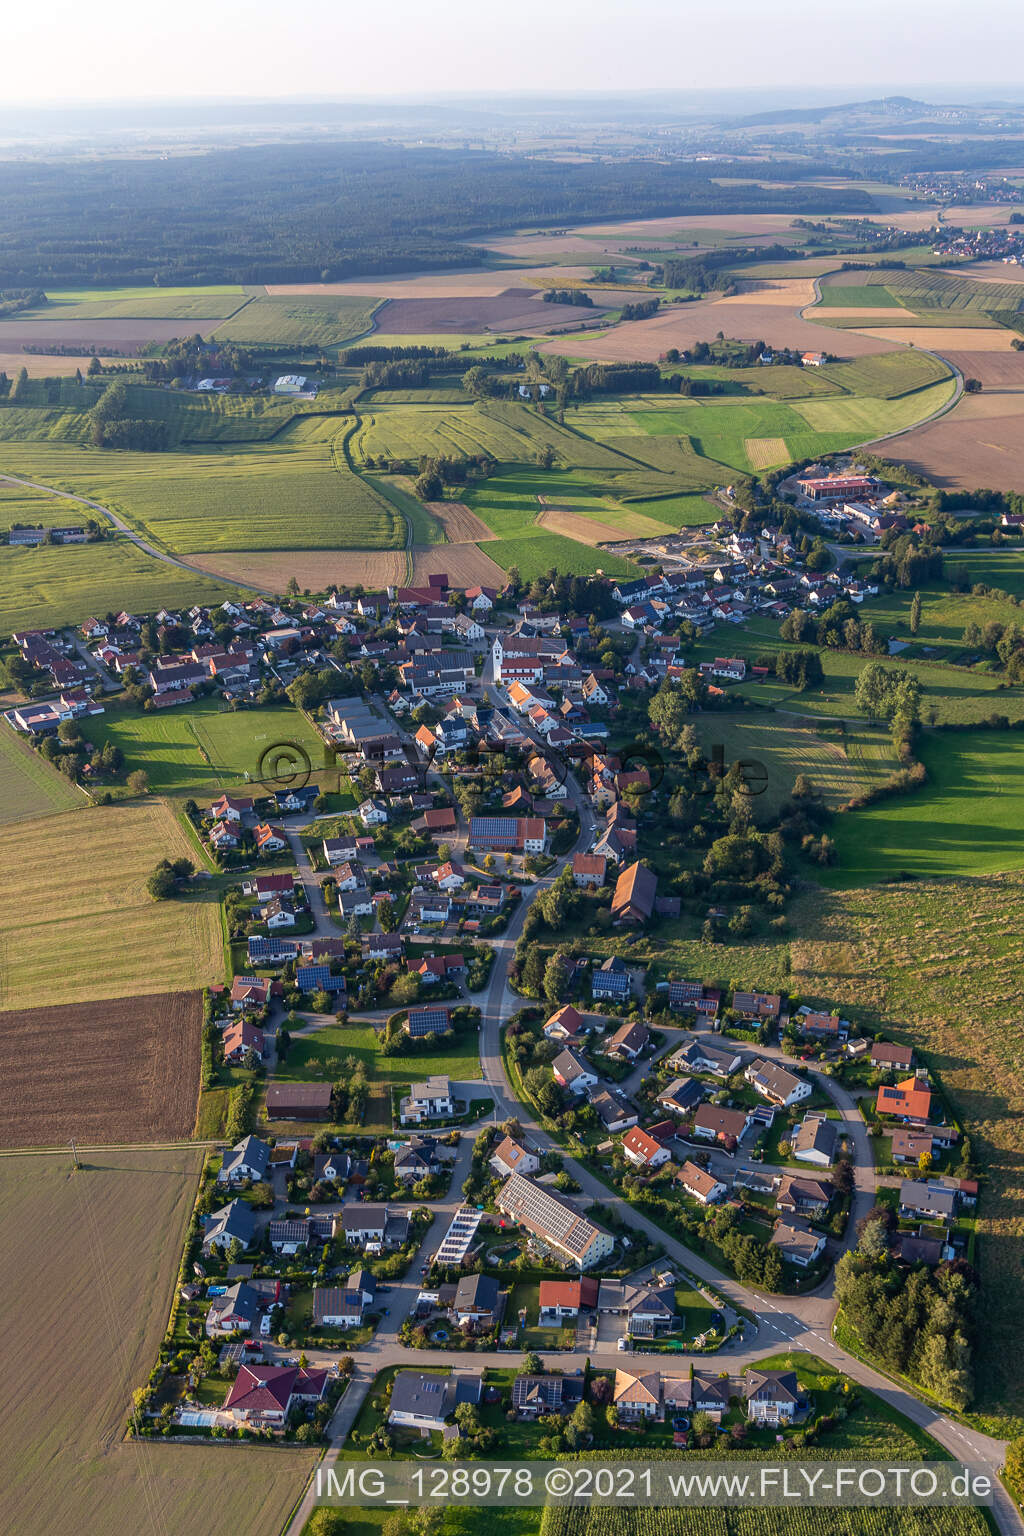 Vue aérienne de Bad Saulgau dans le département Bade-Wurtemberg, Allemagne